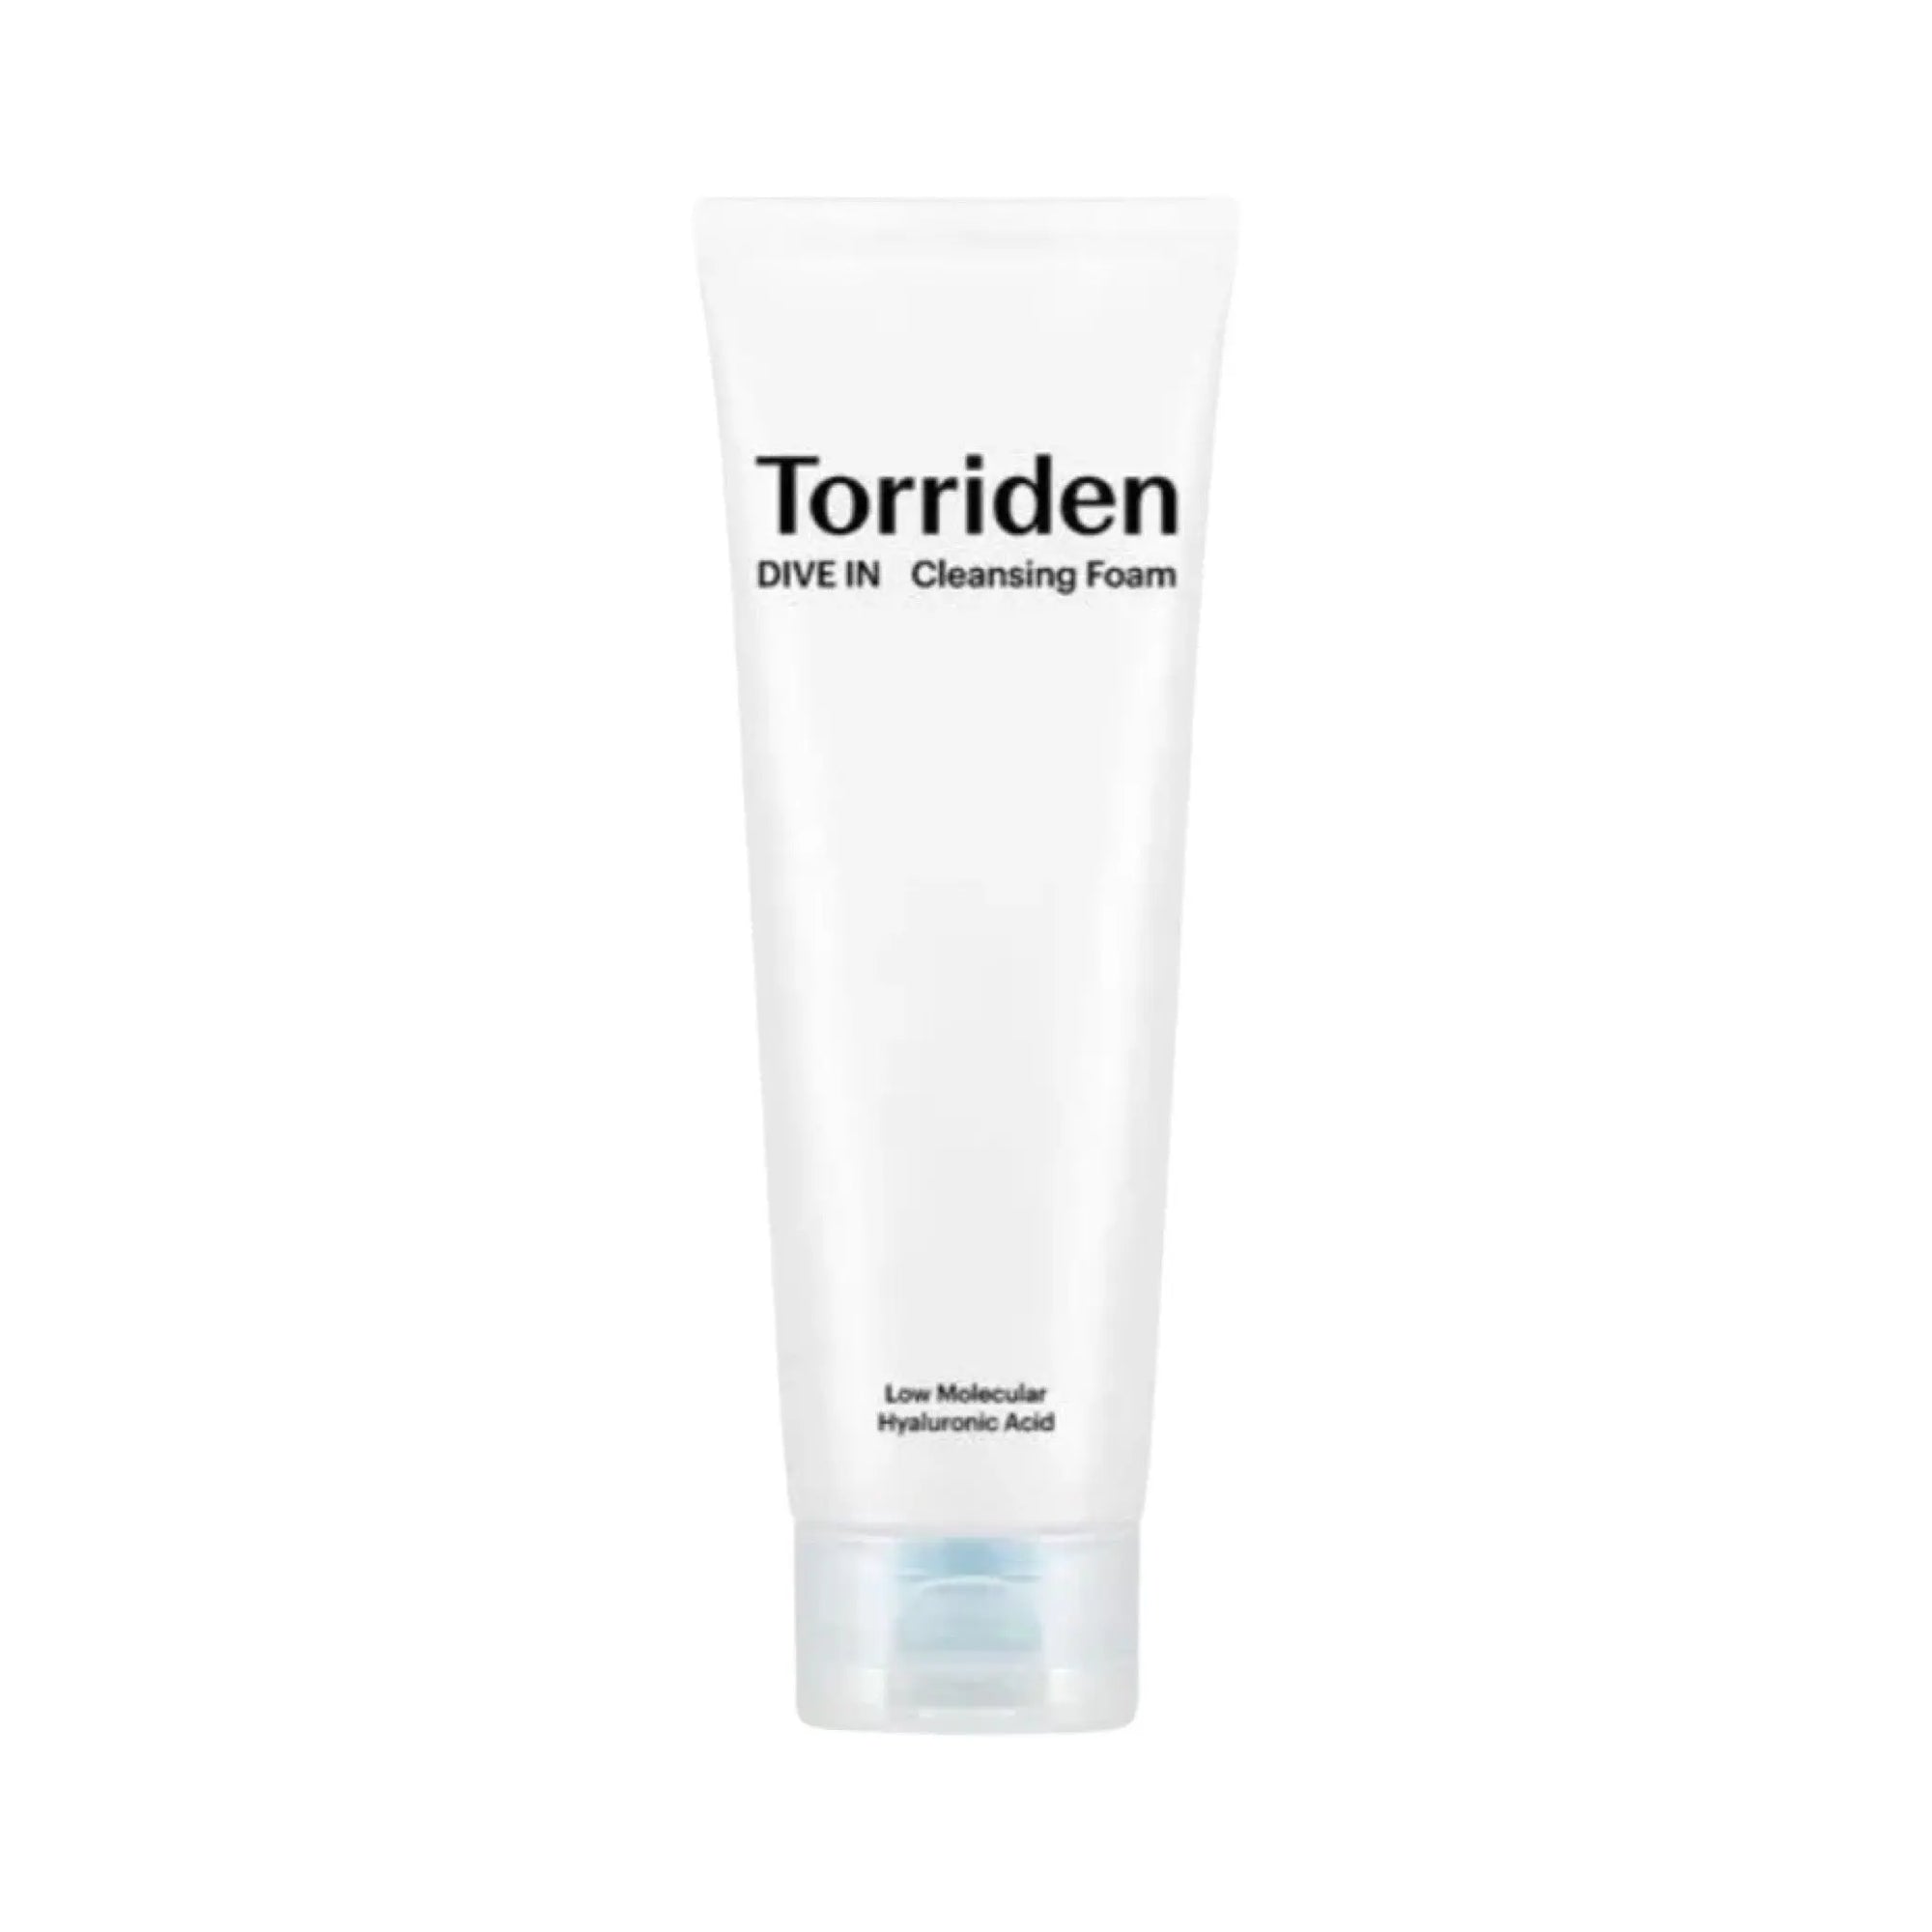 Torriden - Dive-In Low Molecular Hyaluronic Acid Cleansing Foam 150mL Torriden